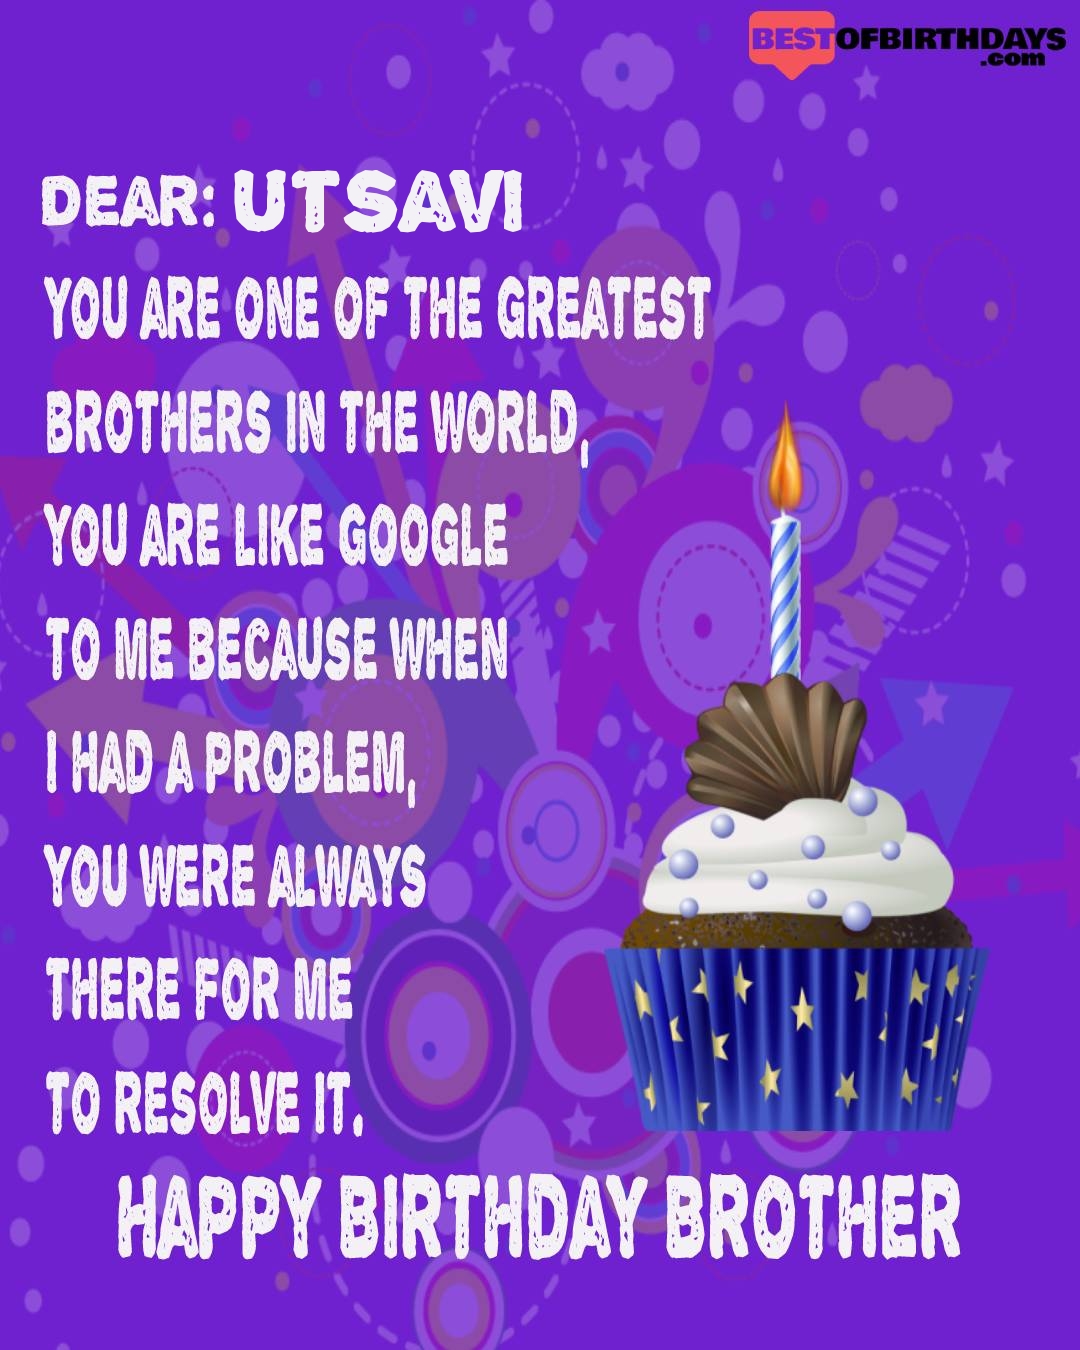 Happy birthday utsavi bhai brother bro